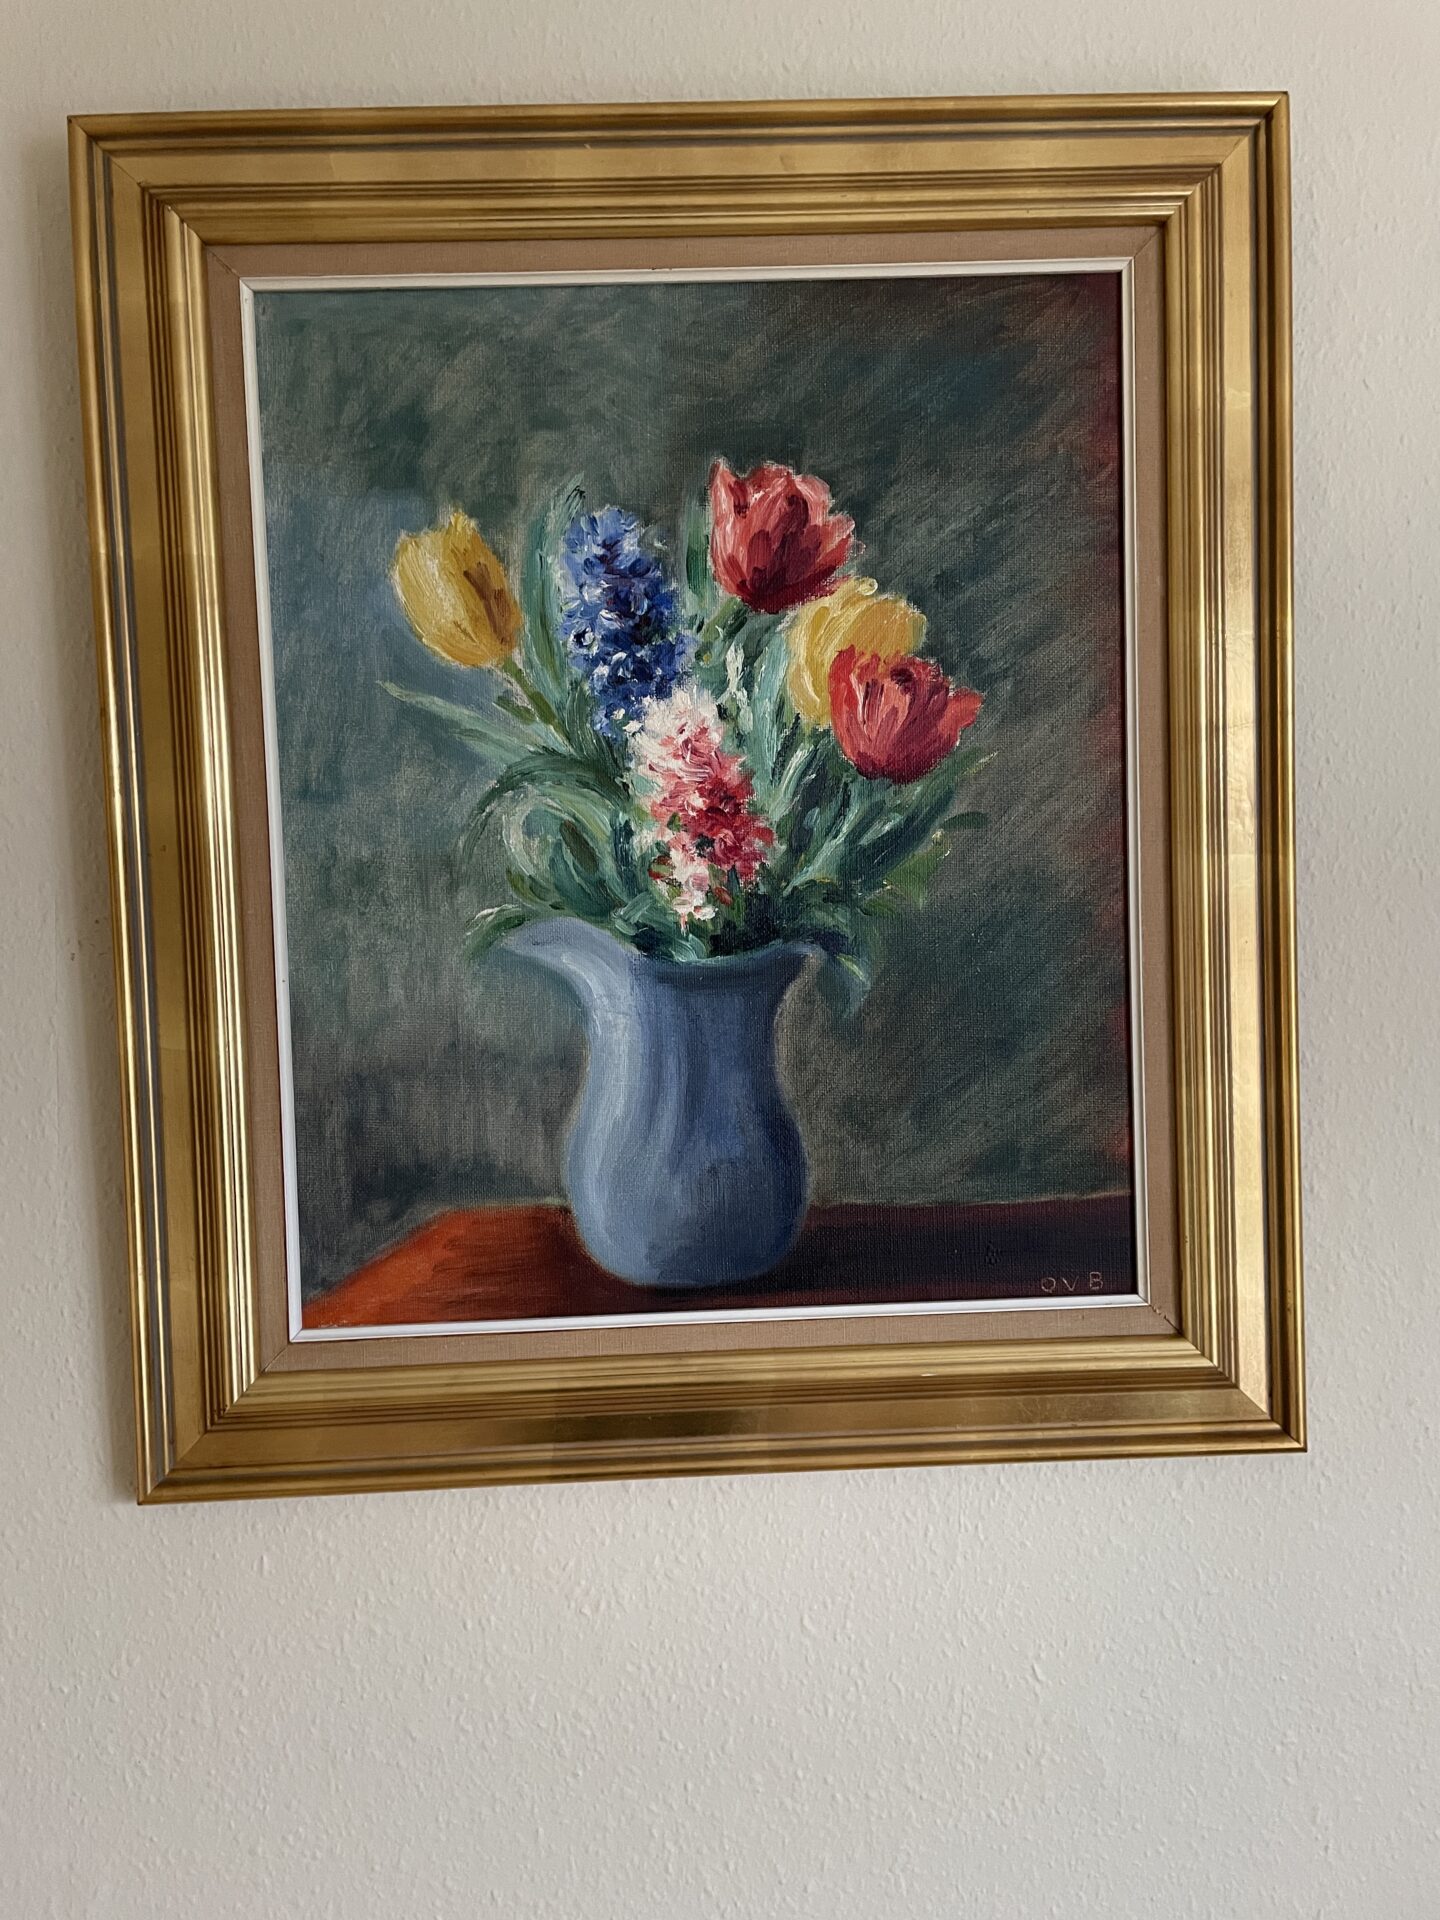 Blomstermaleri, sign OVB, rammemål 70x80 cm, pris 500kr